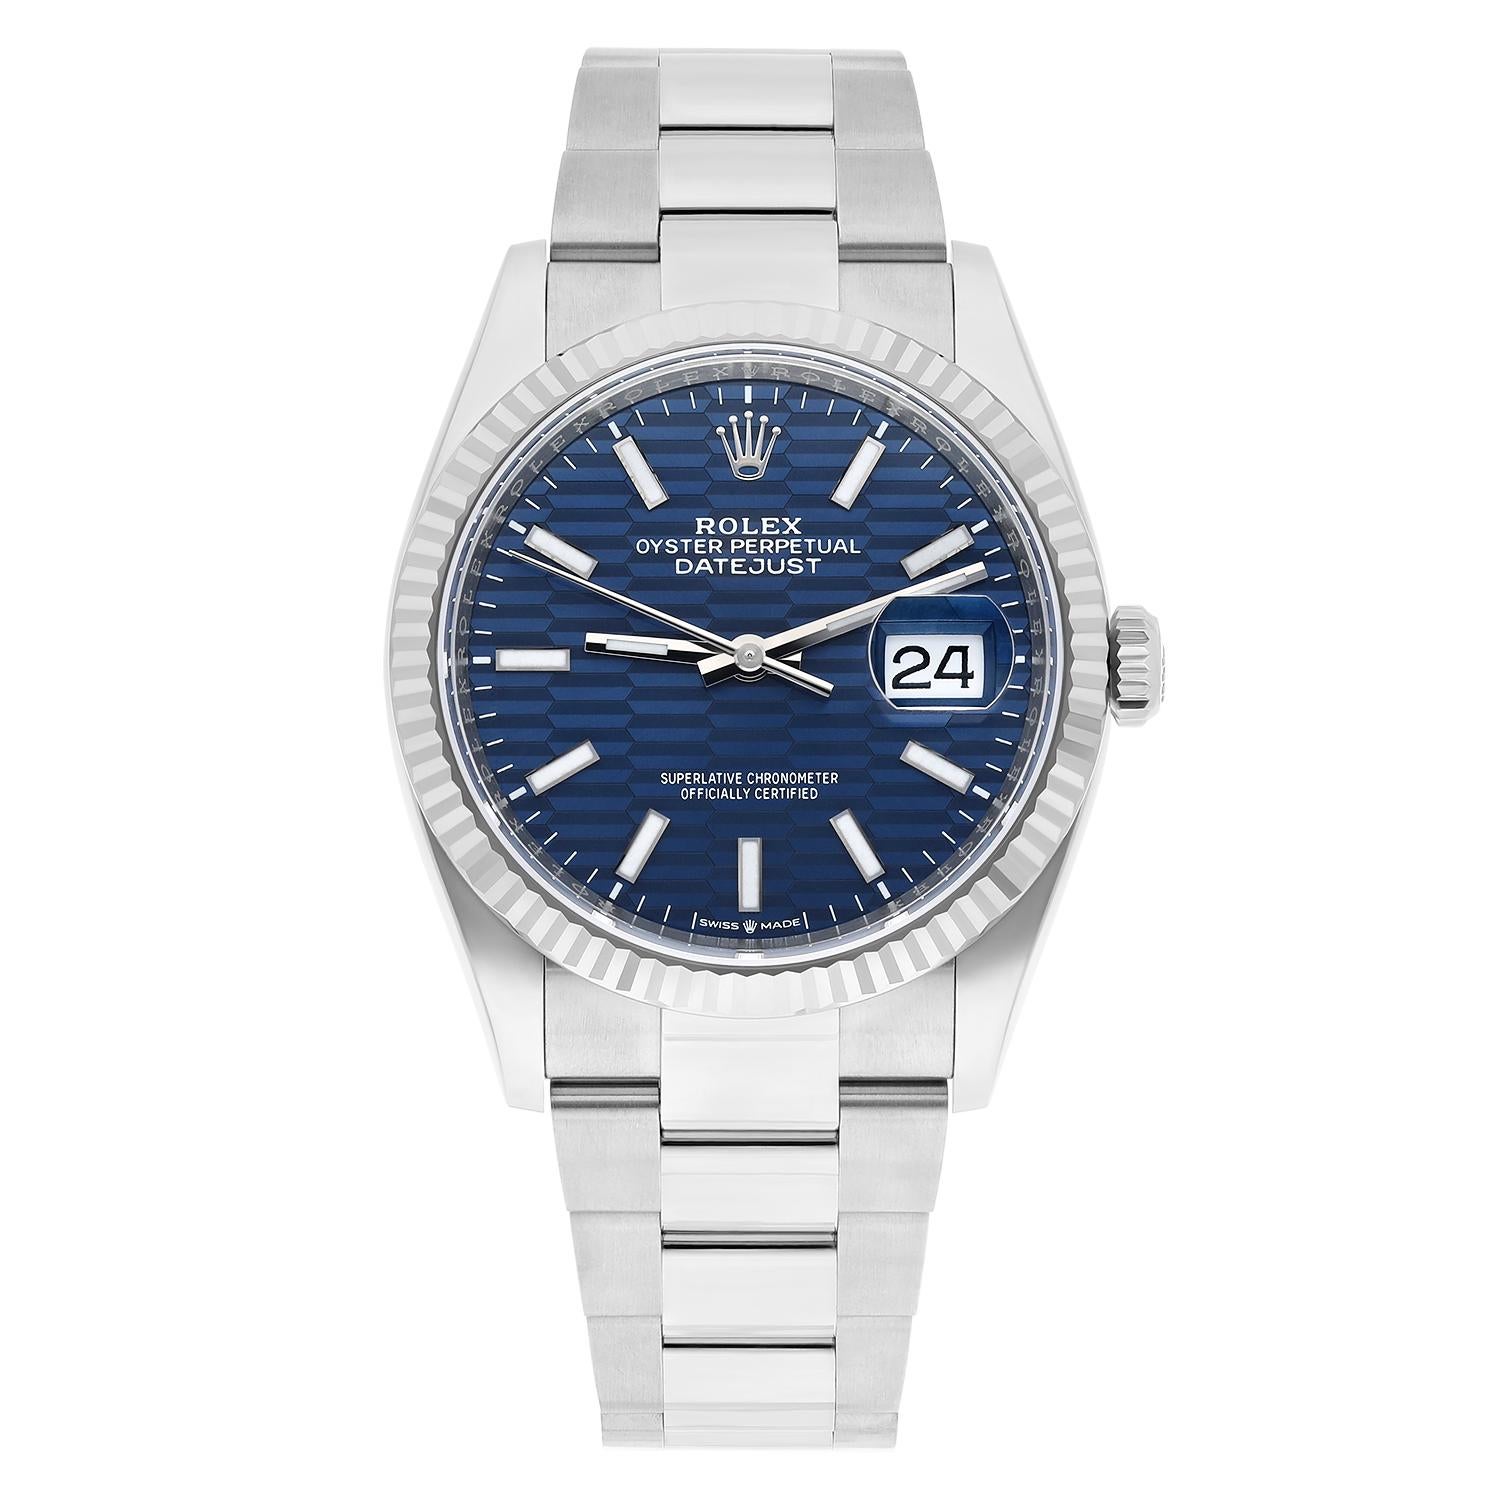 Voici la montre-bracelet Rolex 126234 Datejust 36mm, une pièce d'horlogerie étonnante avec un boîtier et un bracelet en argent. Cette montre de luxe présente un cadran à motif bleu avec des index bâtons, des aiguilles lumineuses et un indicateur de